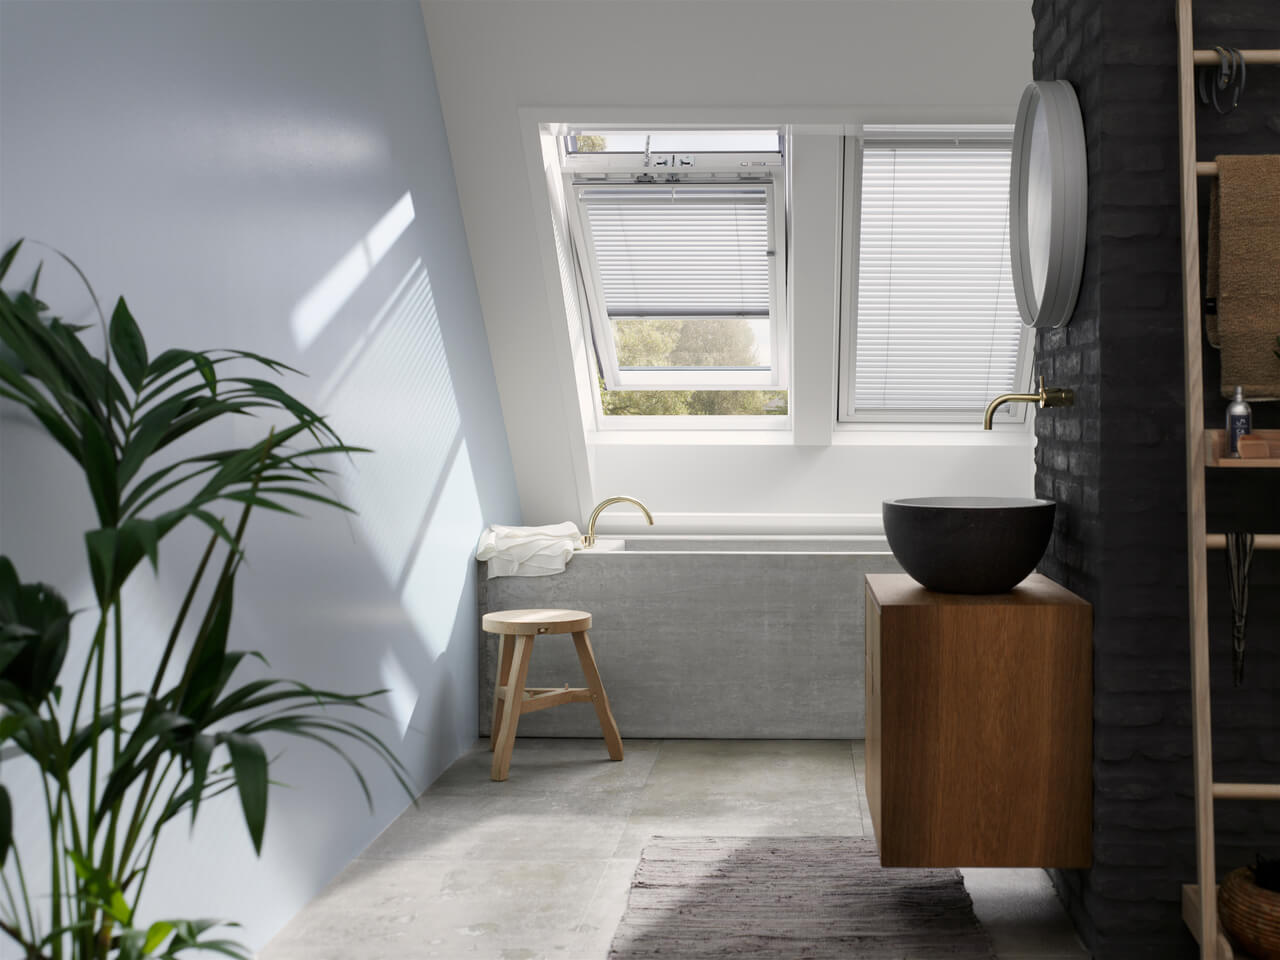 Modernt badrum med VELUX takfönster, rund spegel och träfåfänglighet.